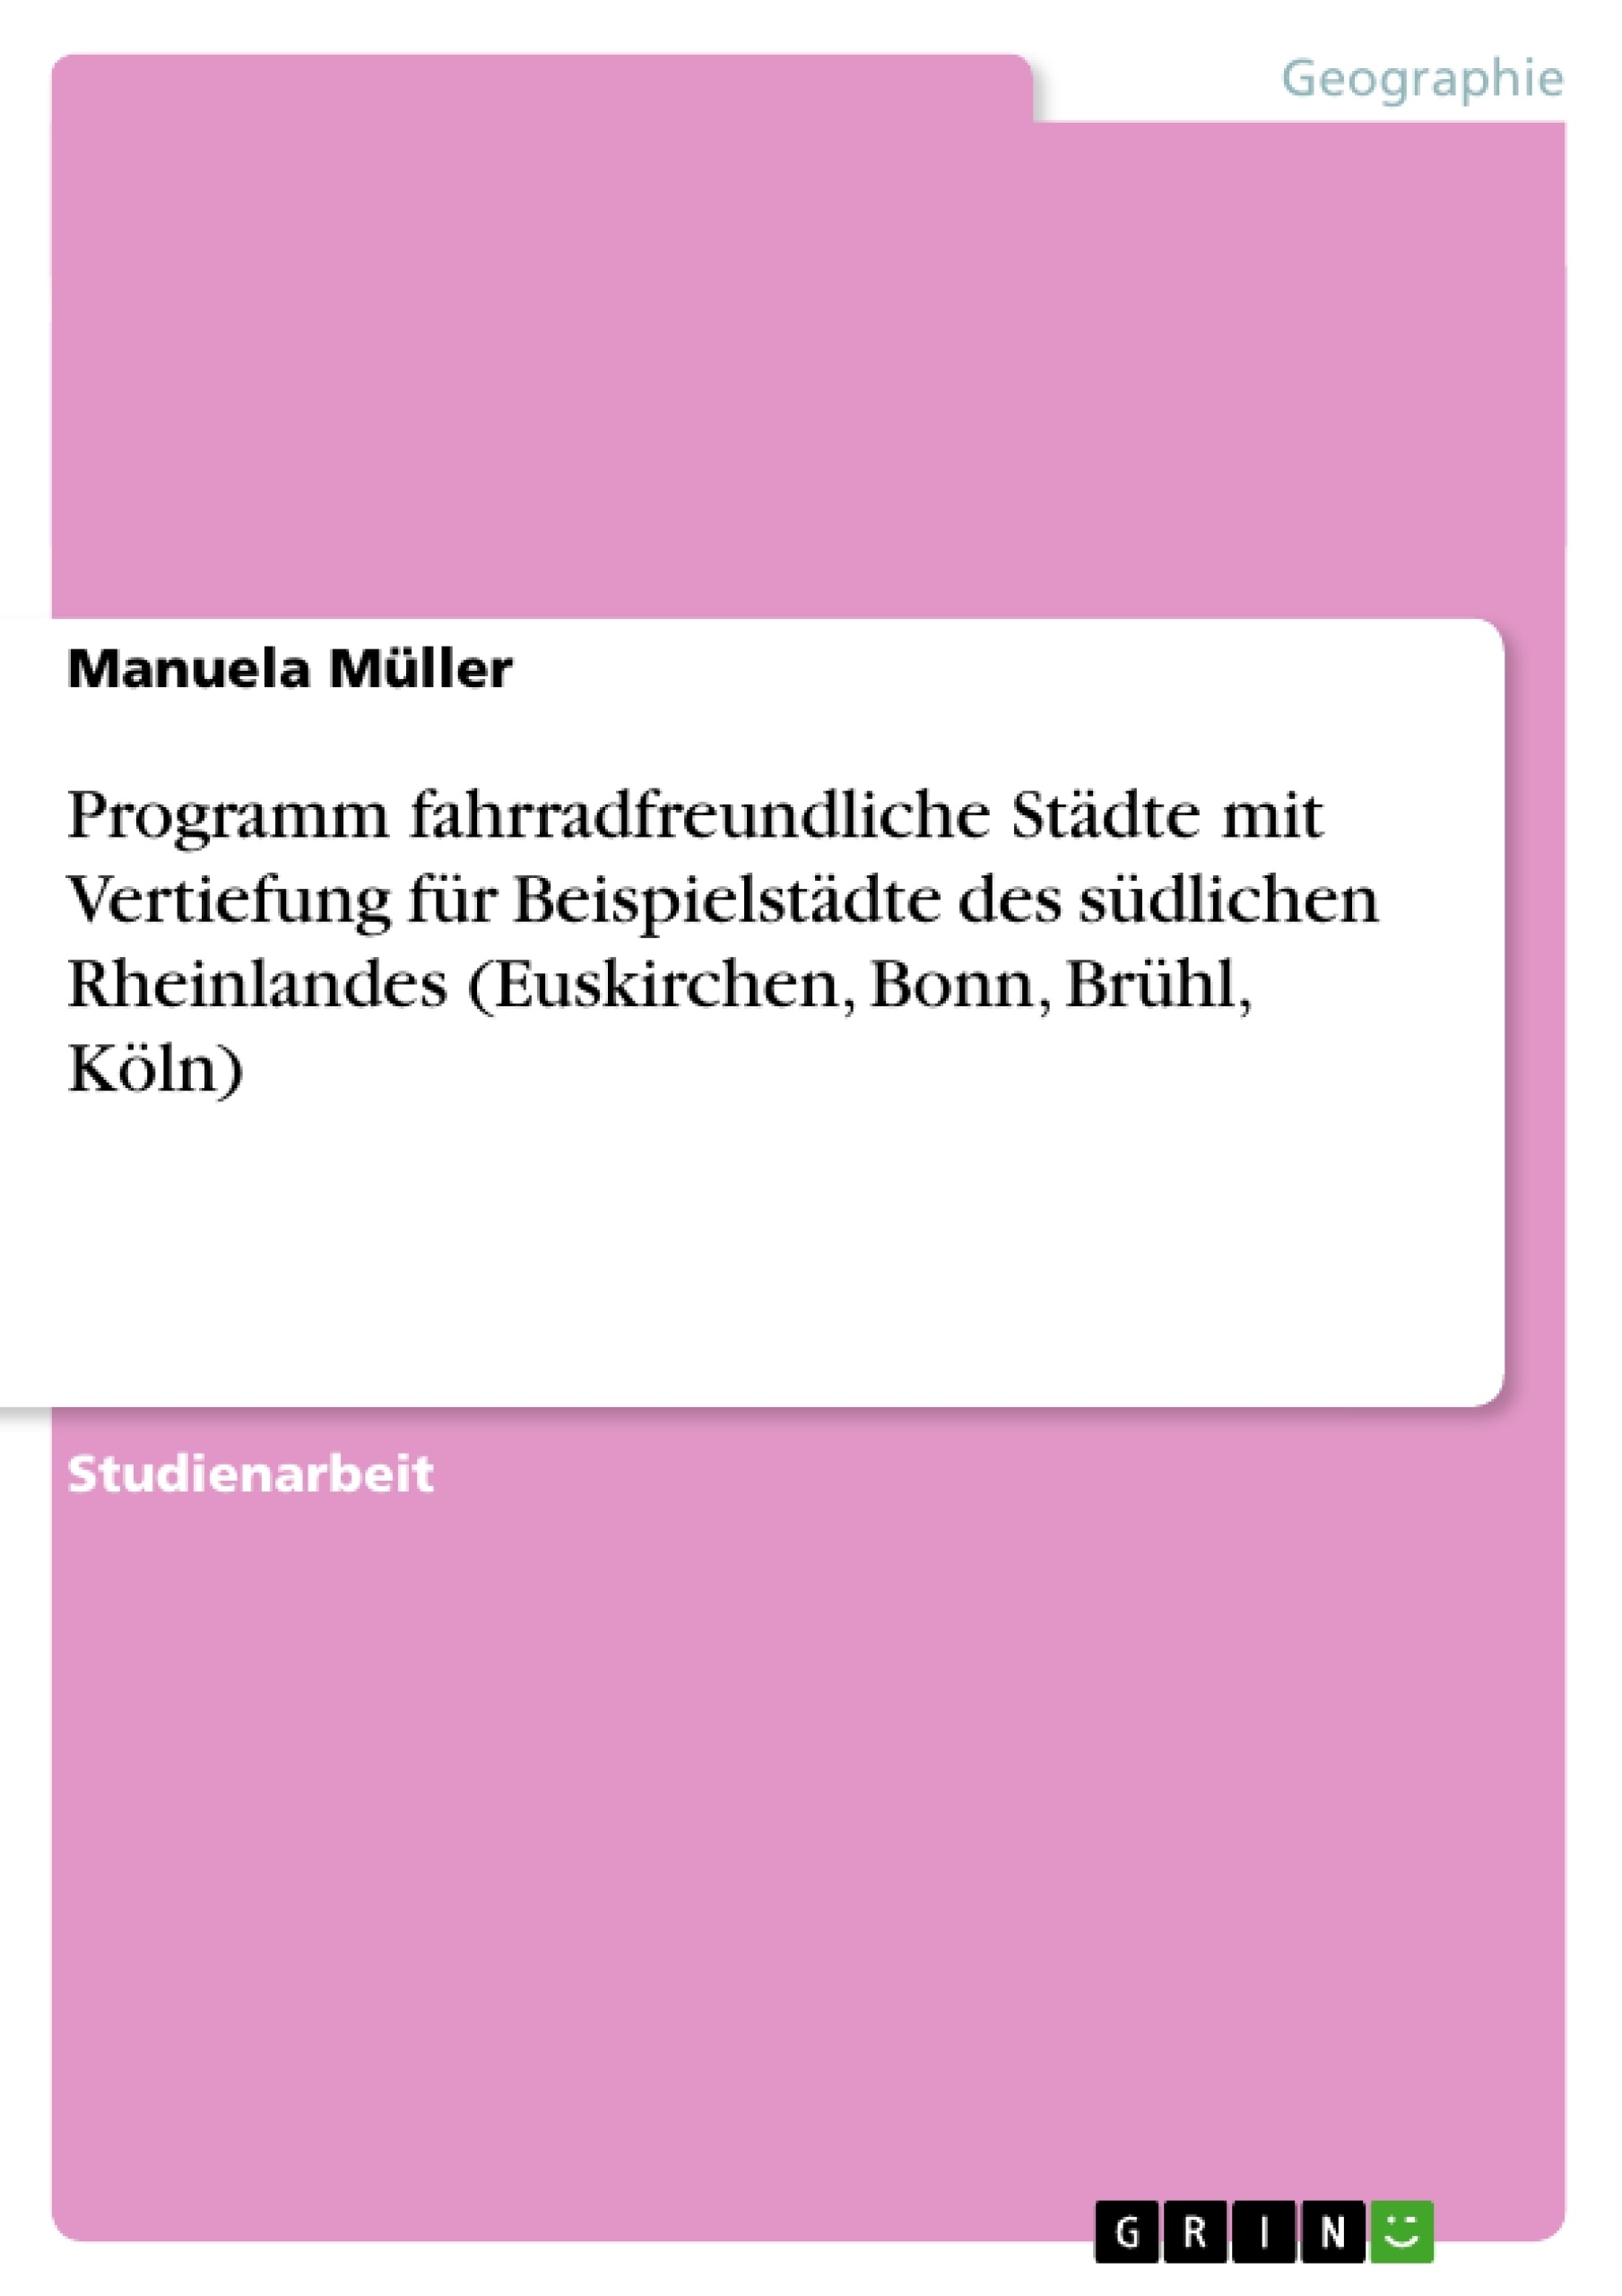 Title: Programm fahrradfreundliche Städte mit Vertiefung für Beispielstädte des südlichen Rheinlandes (Euskirchen, Bonn, Brühl, Köln)